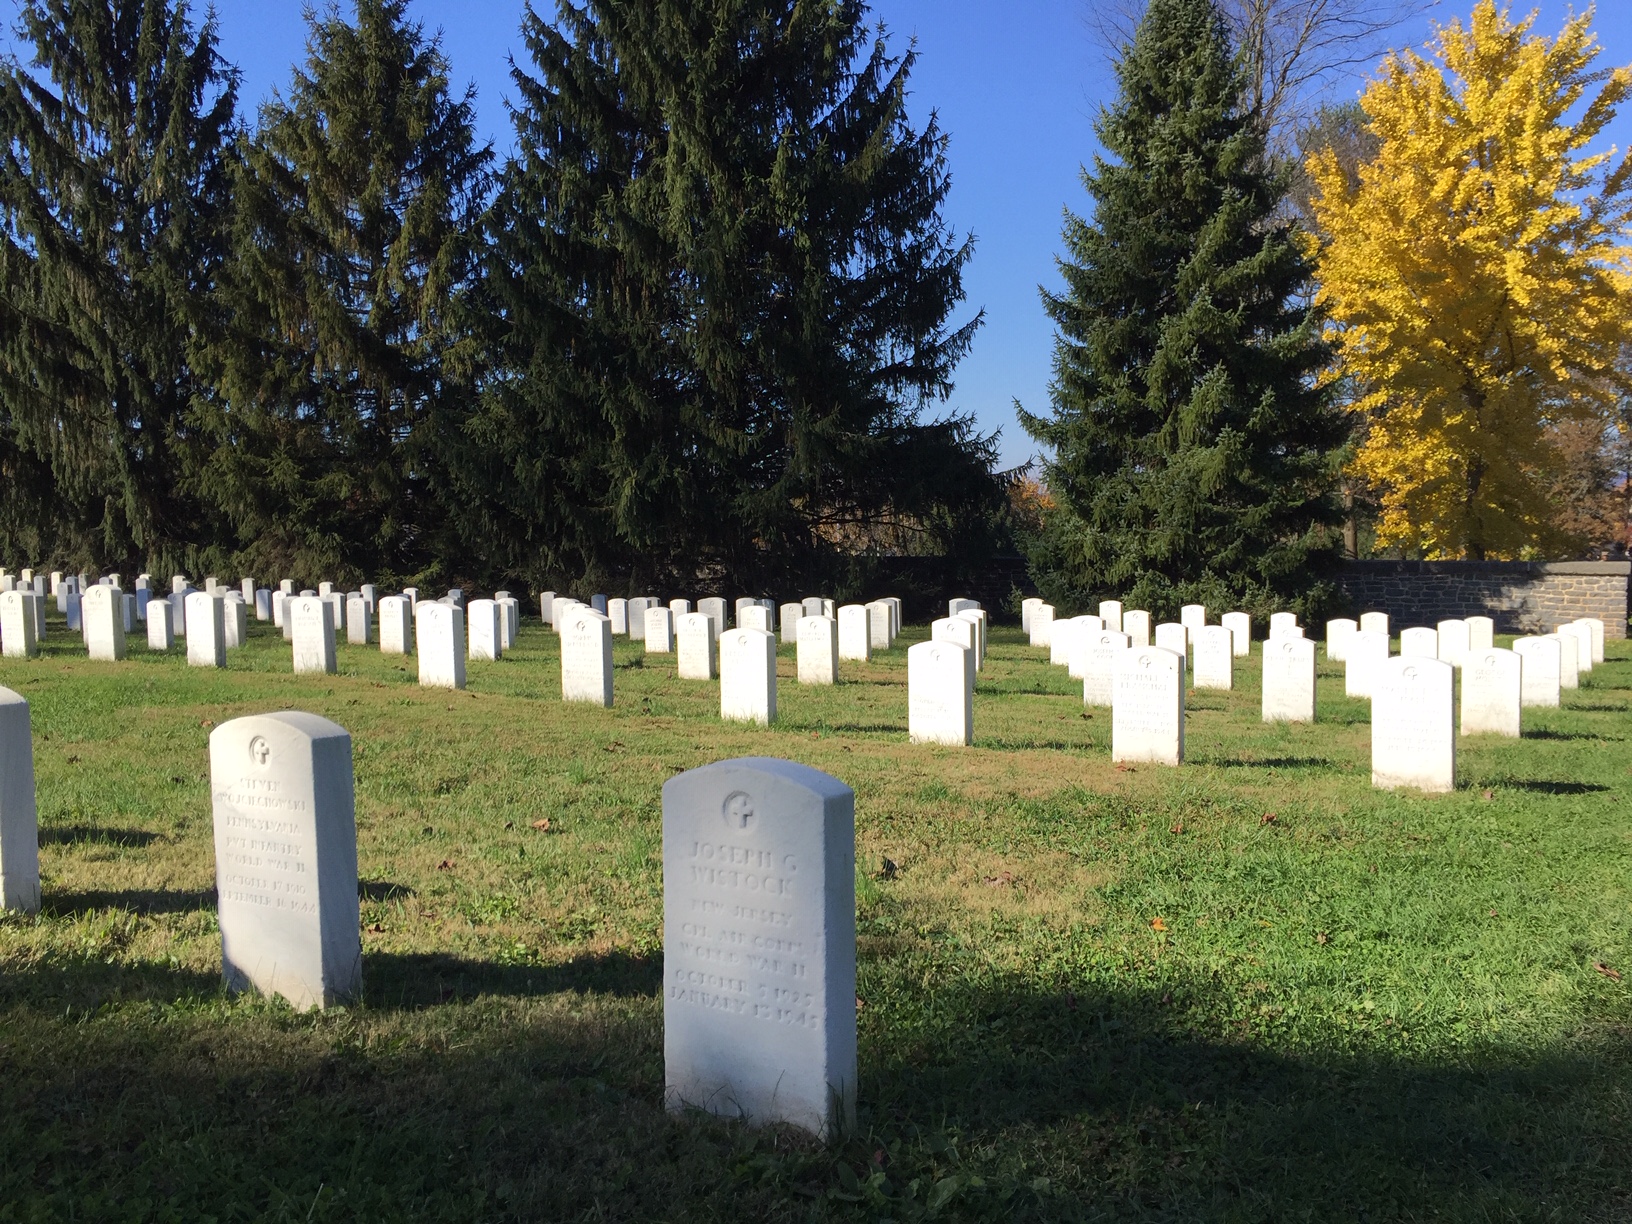 graveyard of fallen soldiers